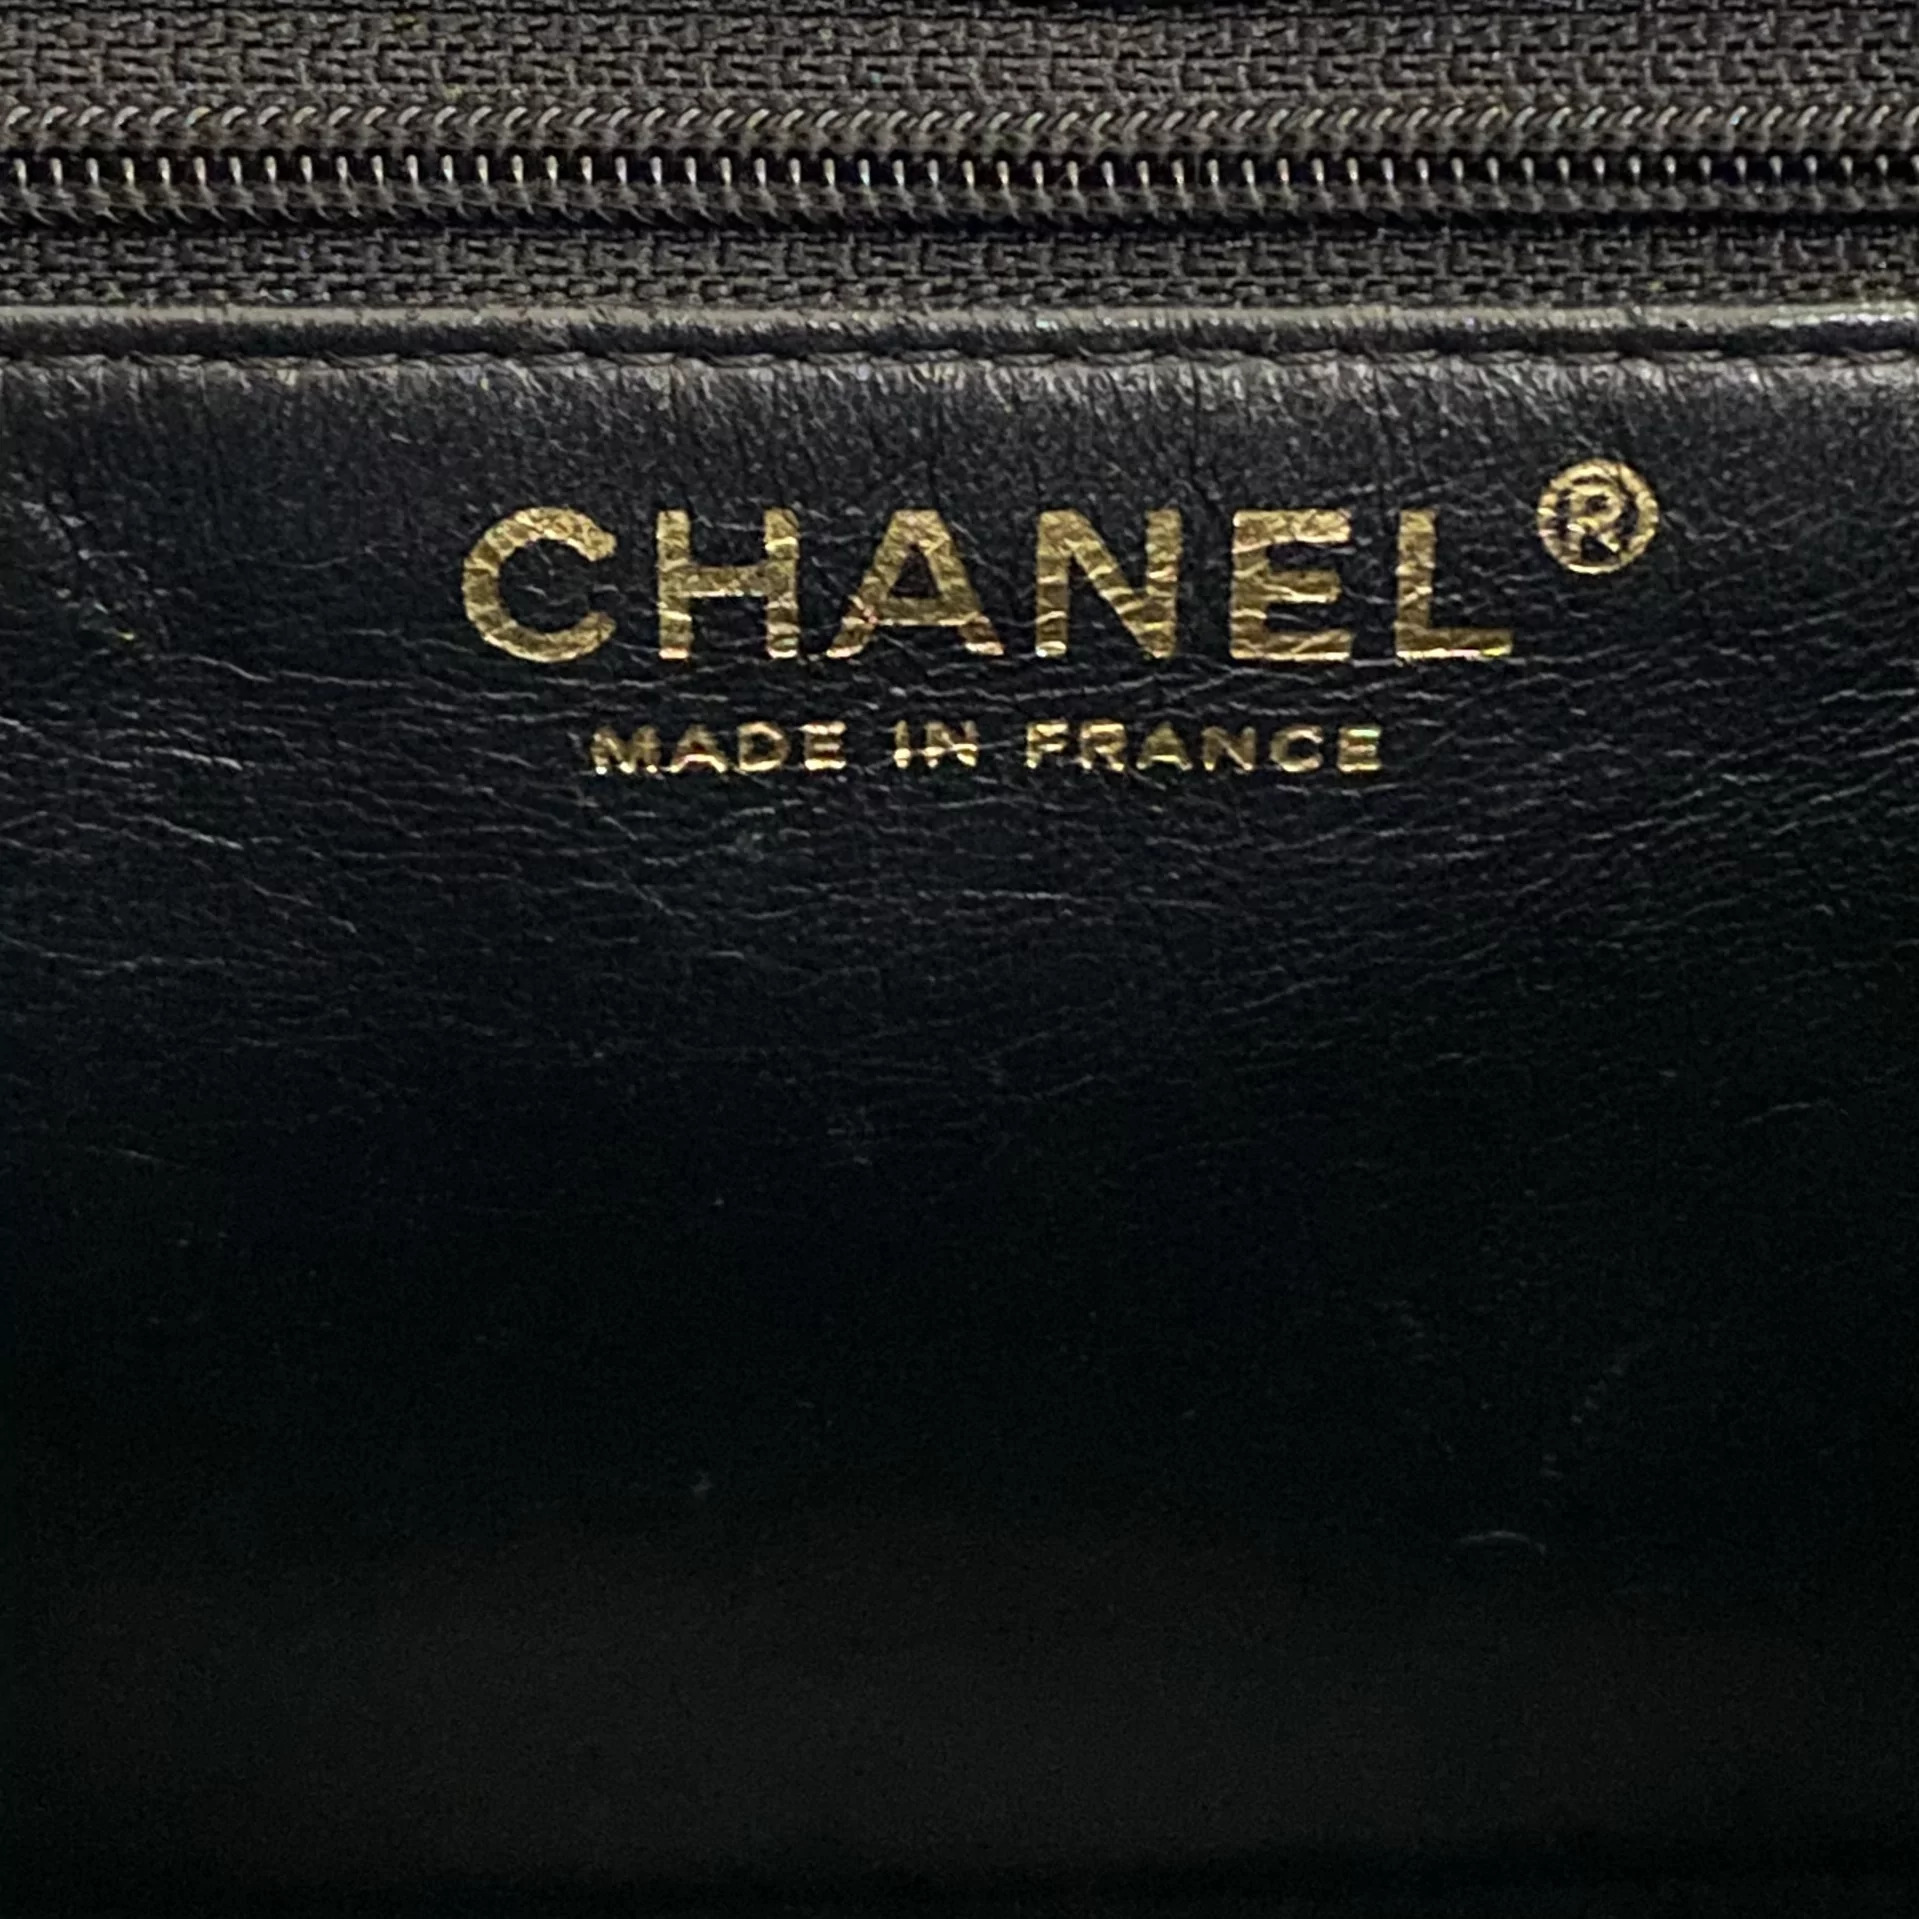 Bolsa Chanel Medallion Preta